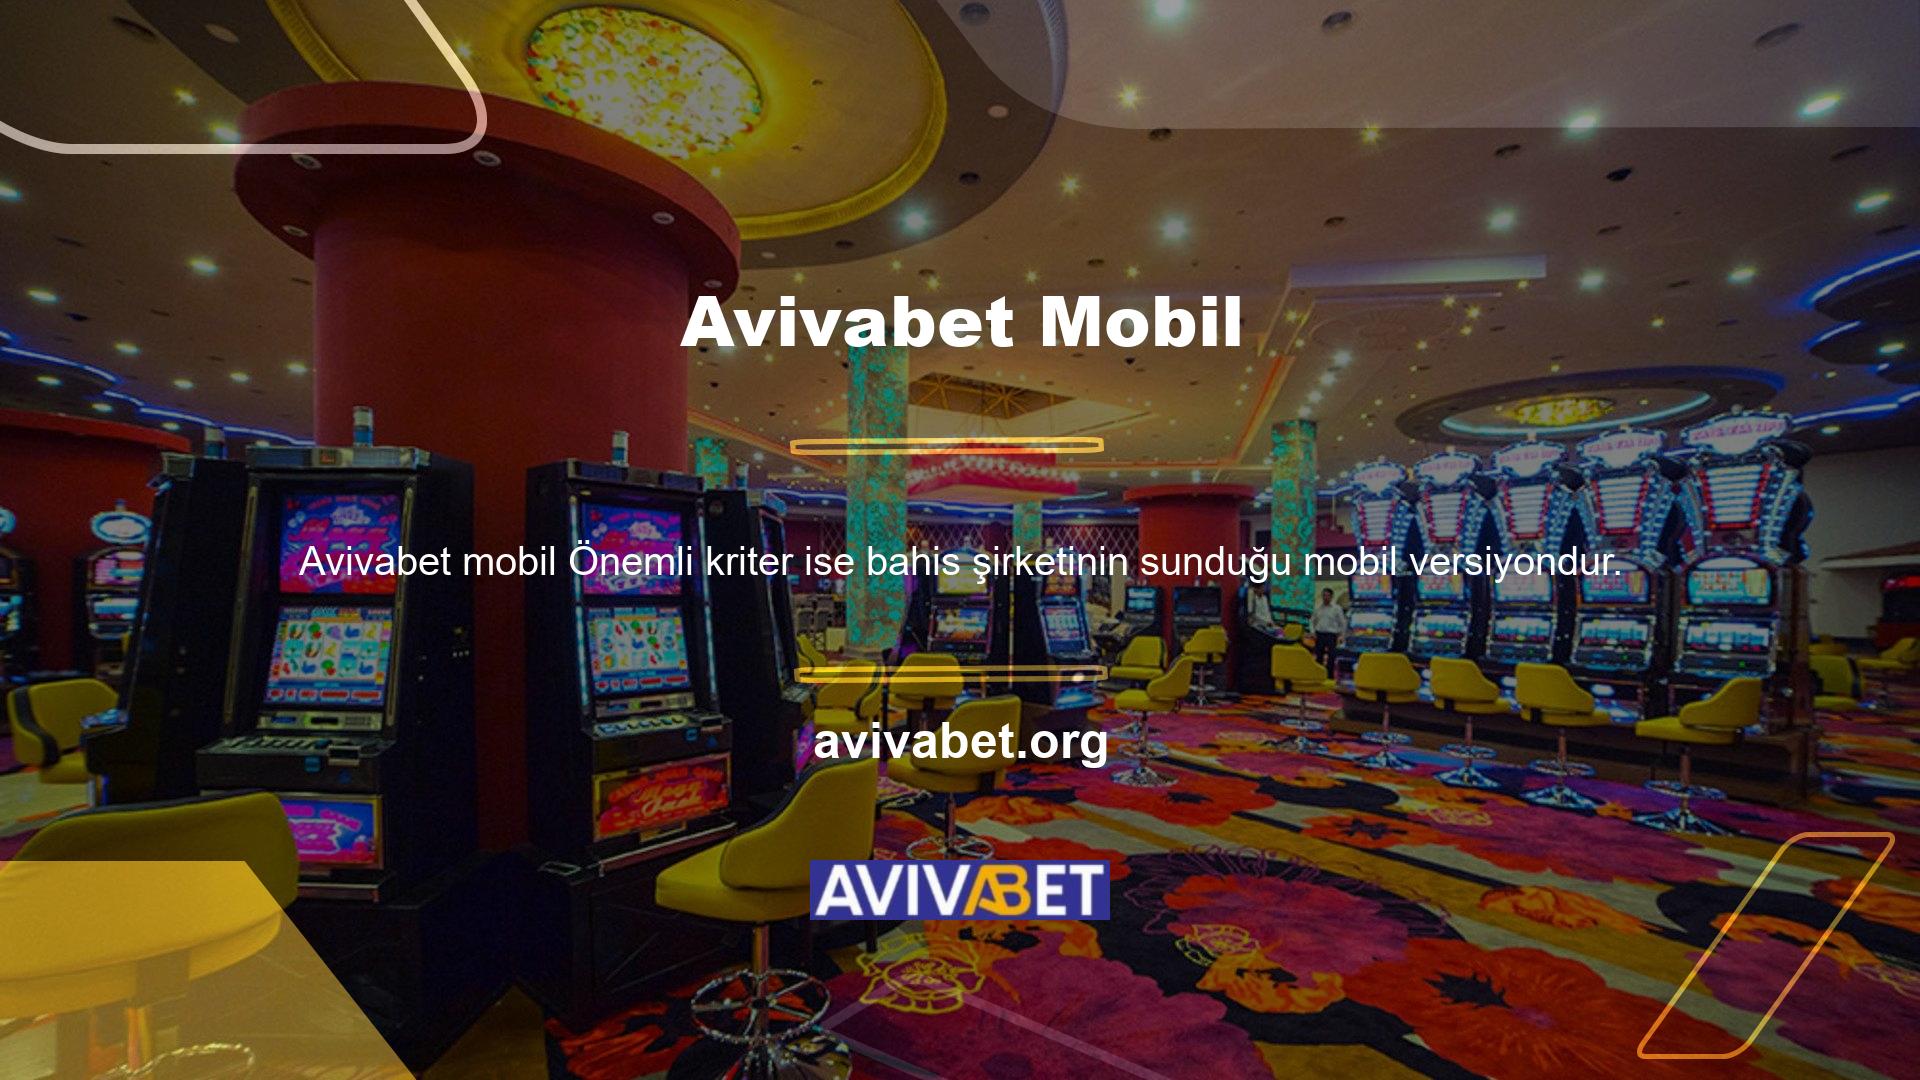 Tüm bahislerin yarısından fazlasını oluşturan mobil bahis, çevrimiçi casino dünyasının önemli bir parçasıdır